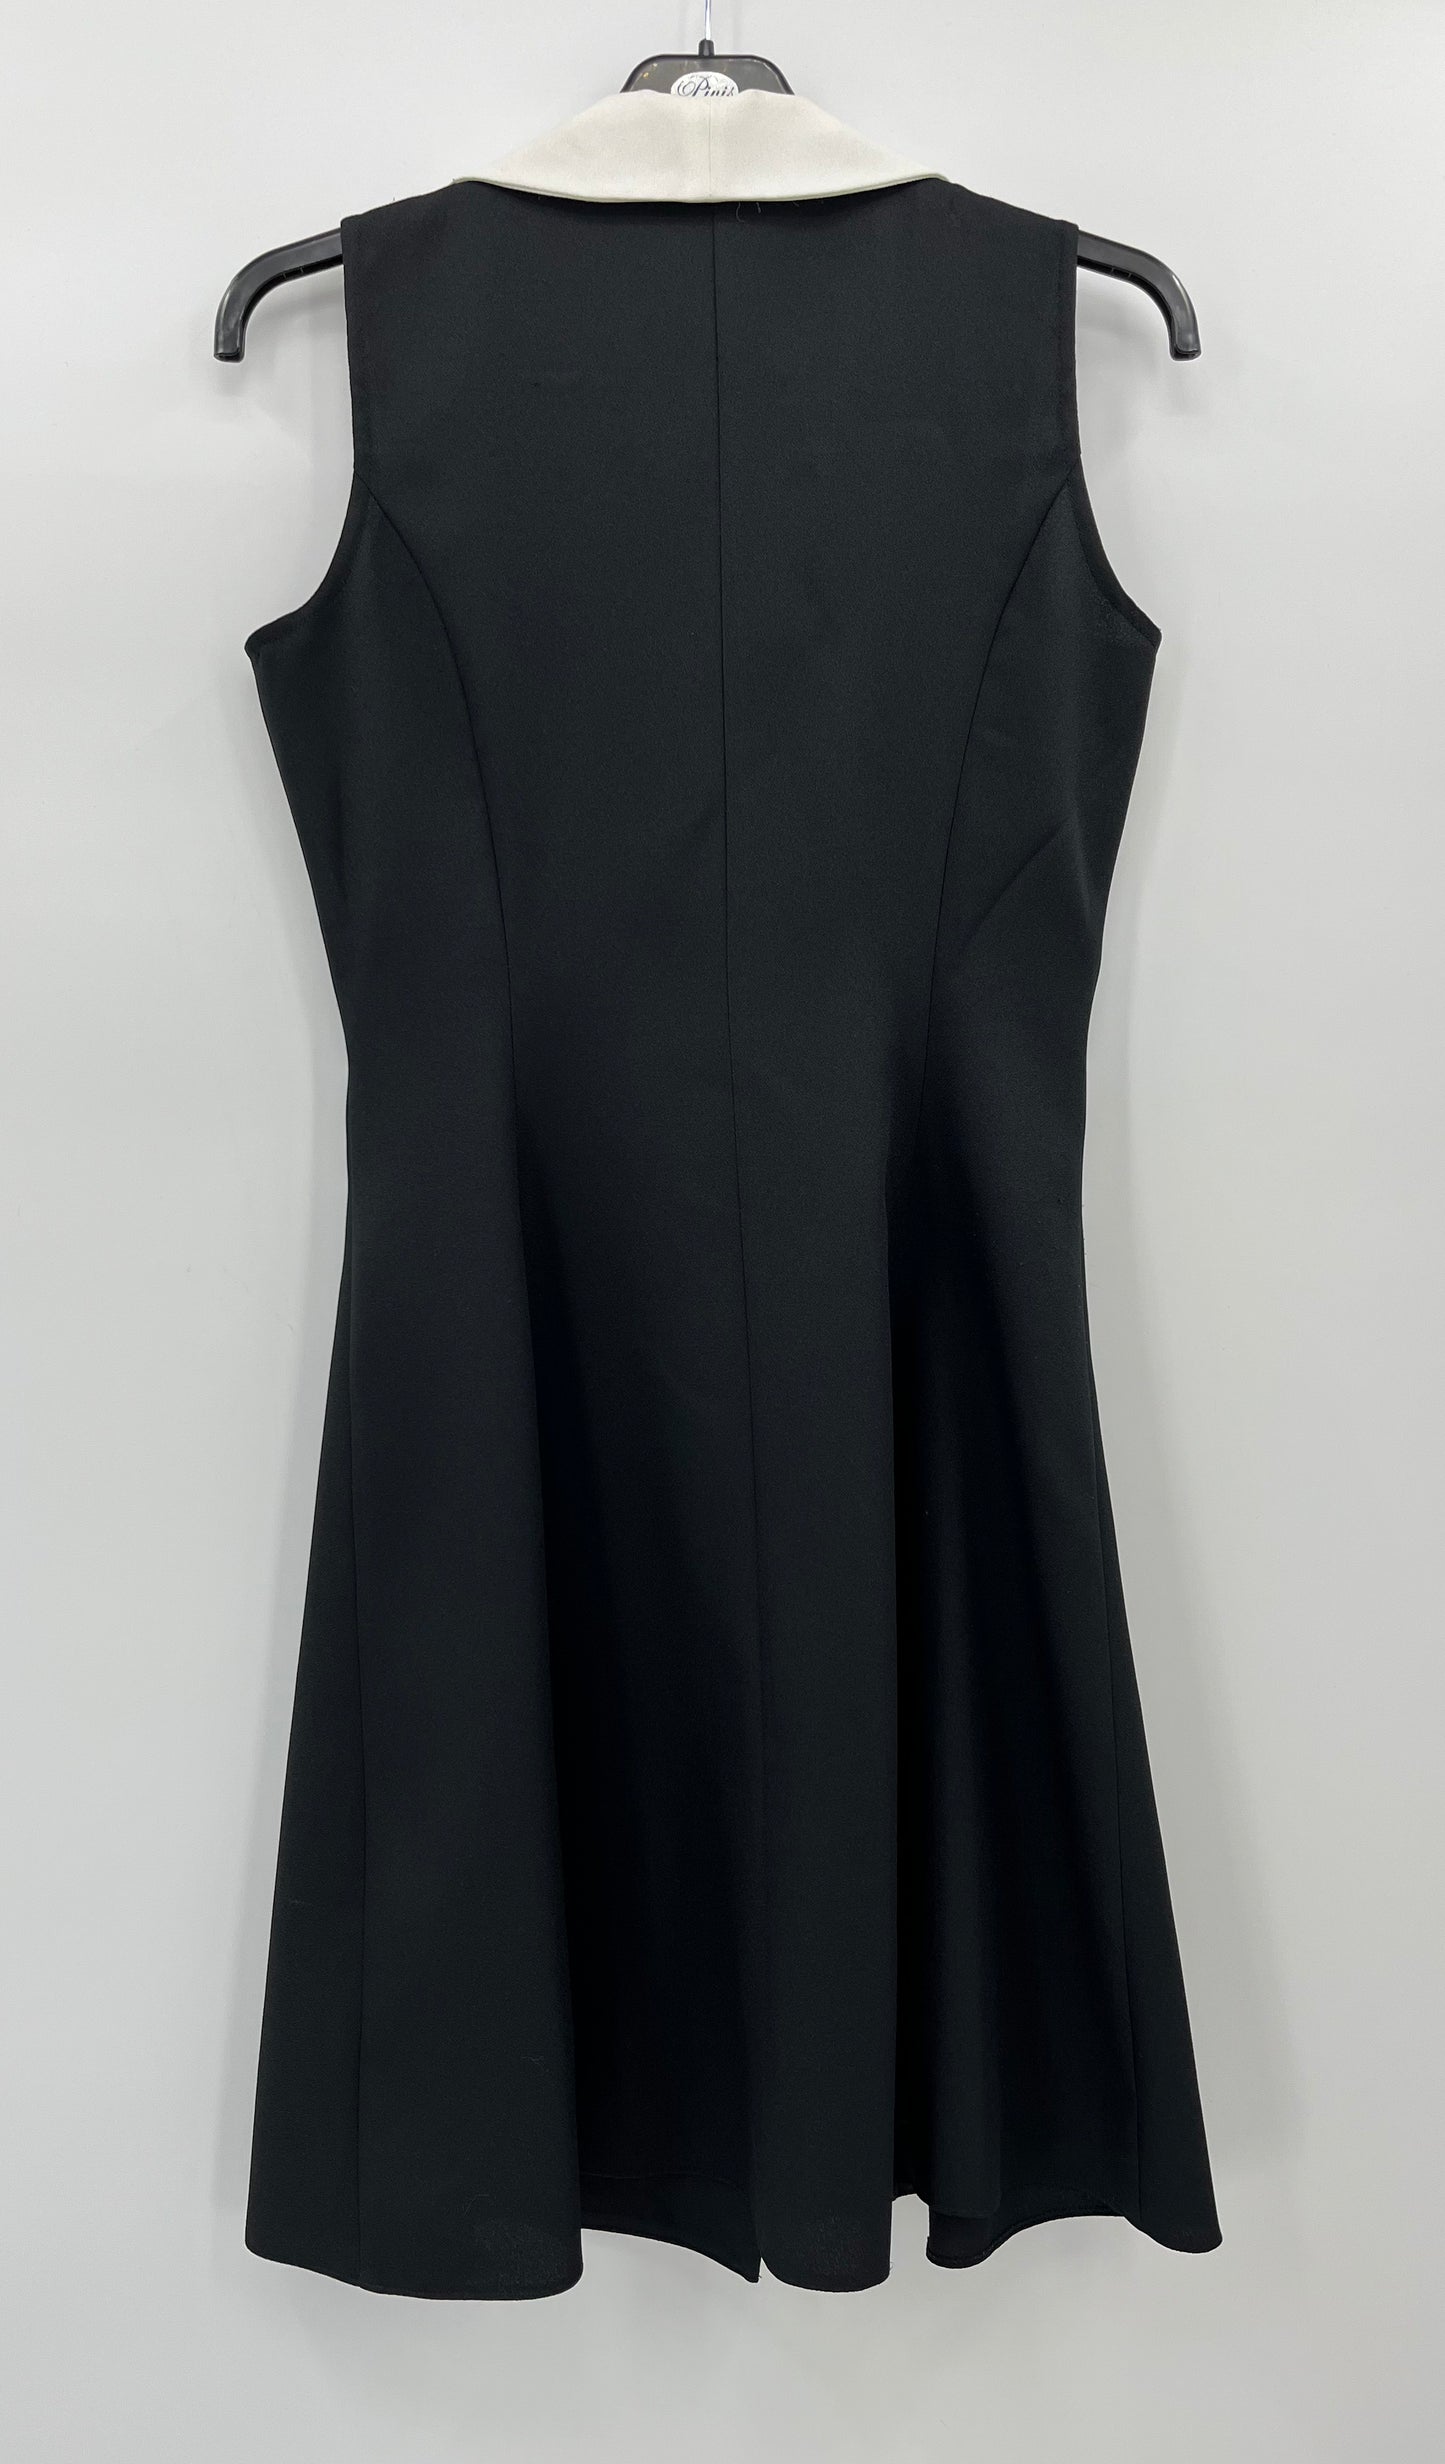 Martinelli, mustavalkoinen mekko, 90-luku, koko 36